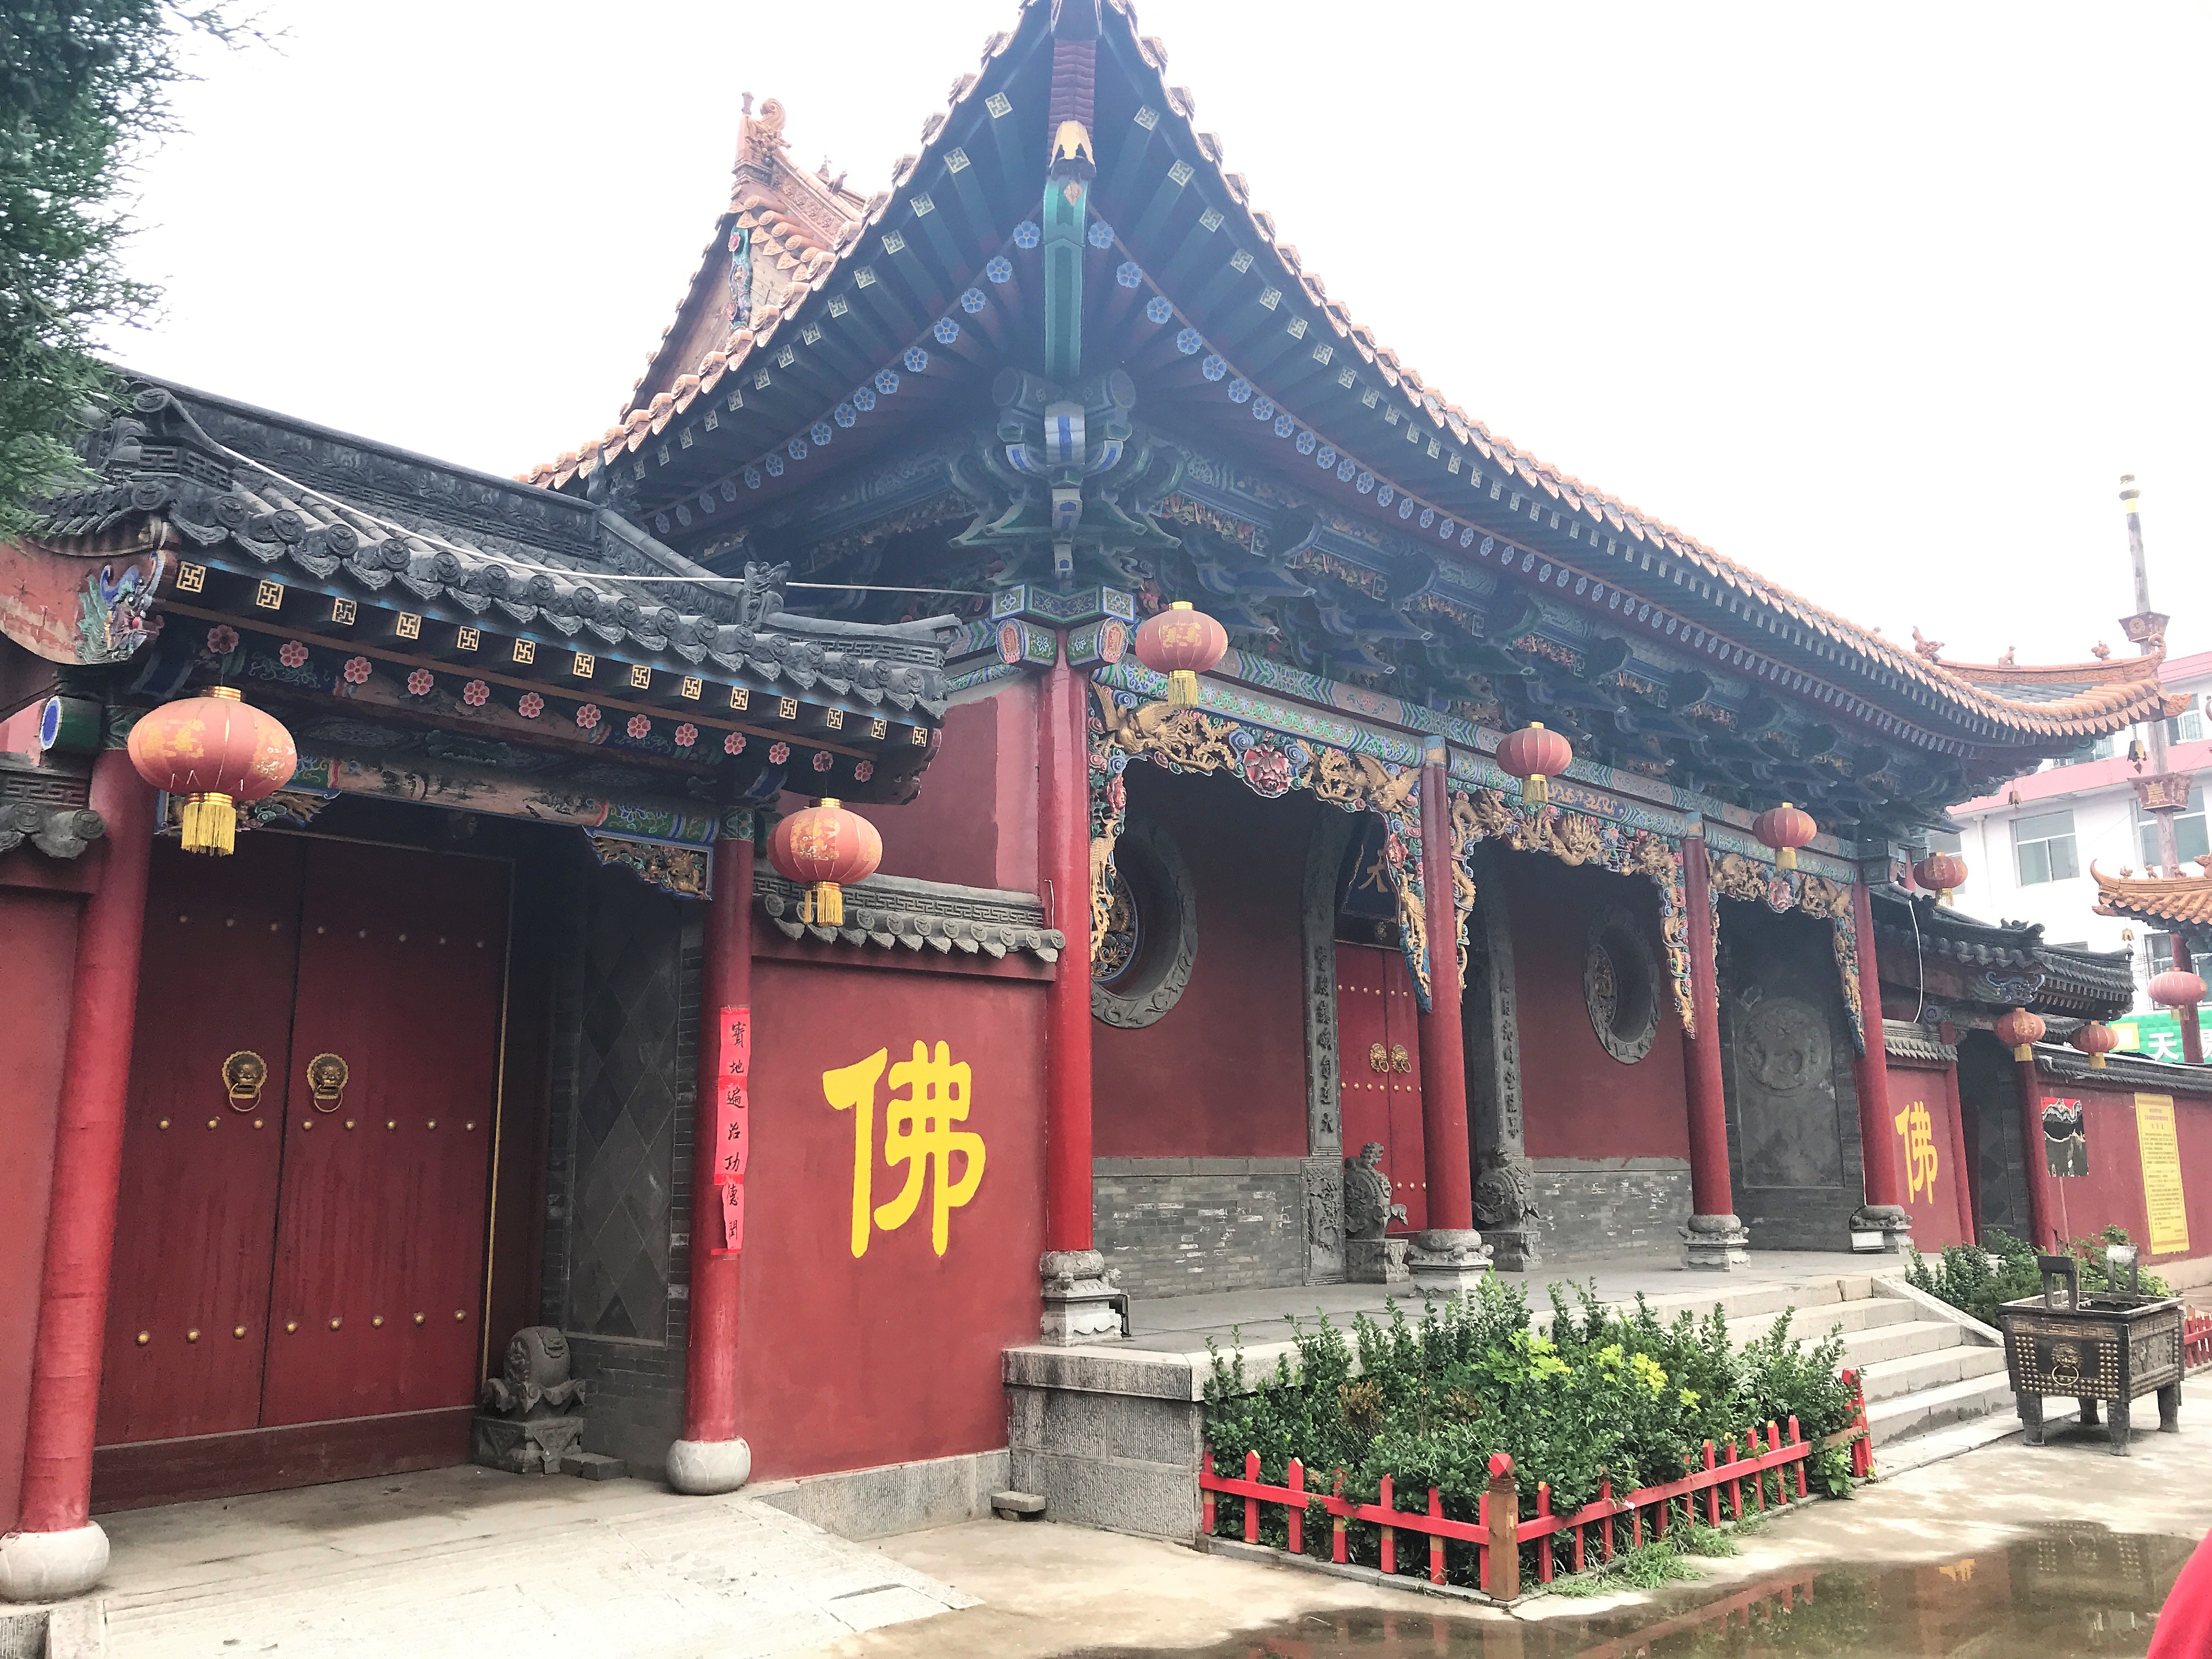 妙觉寺的山门,即天王殿.寺庙坐东向西,整个占地面积约669平方米.